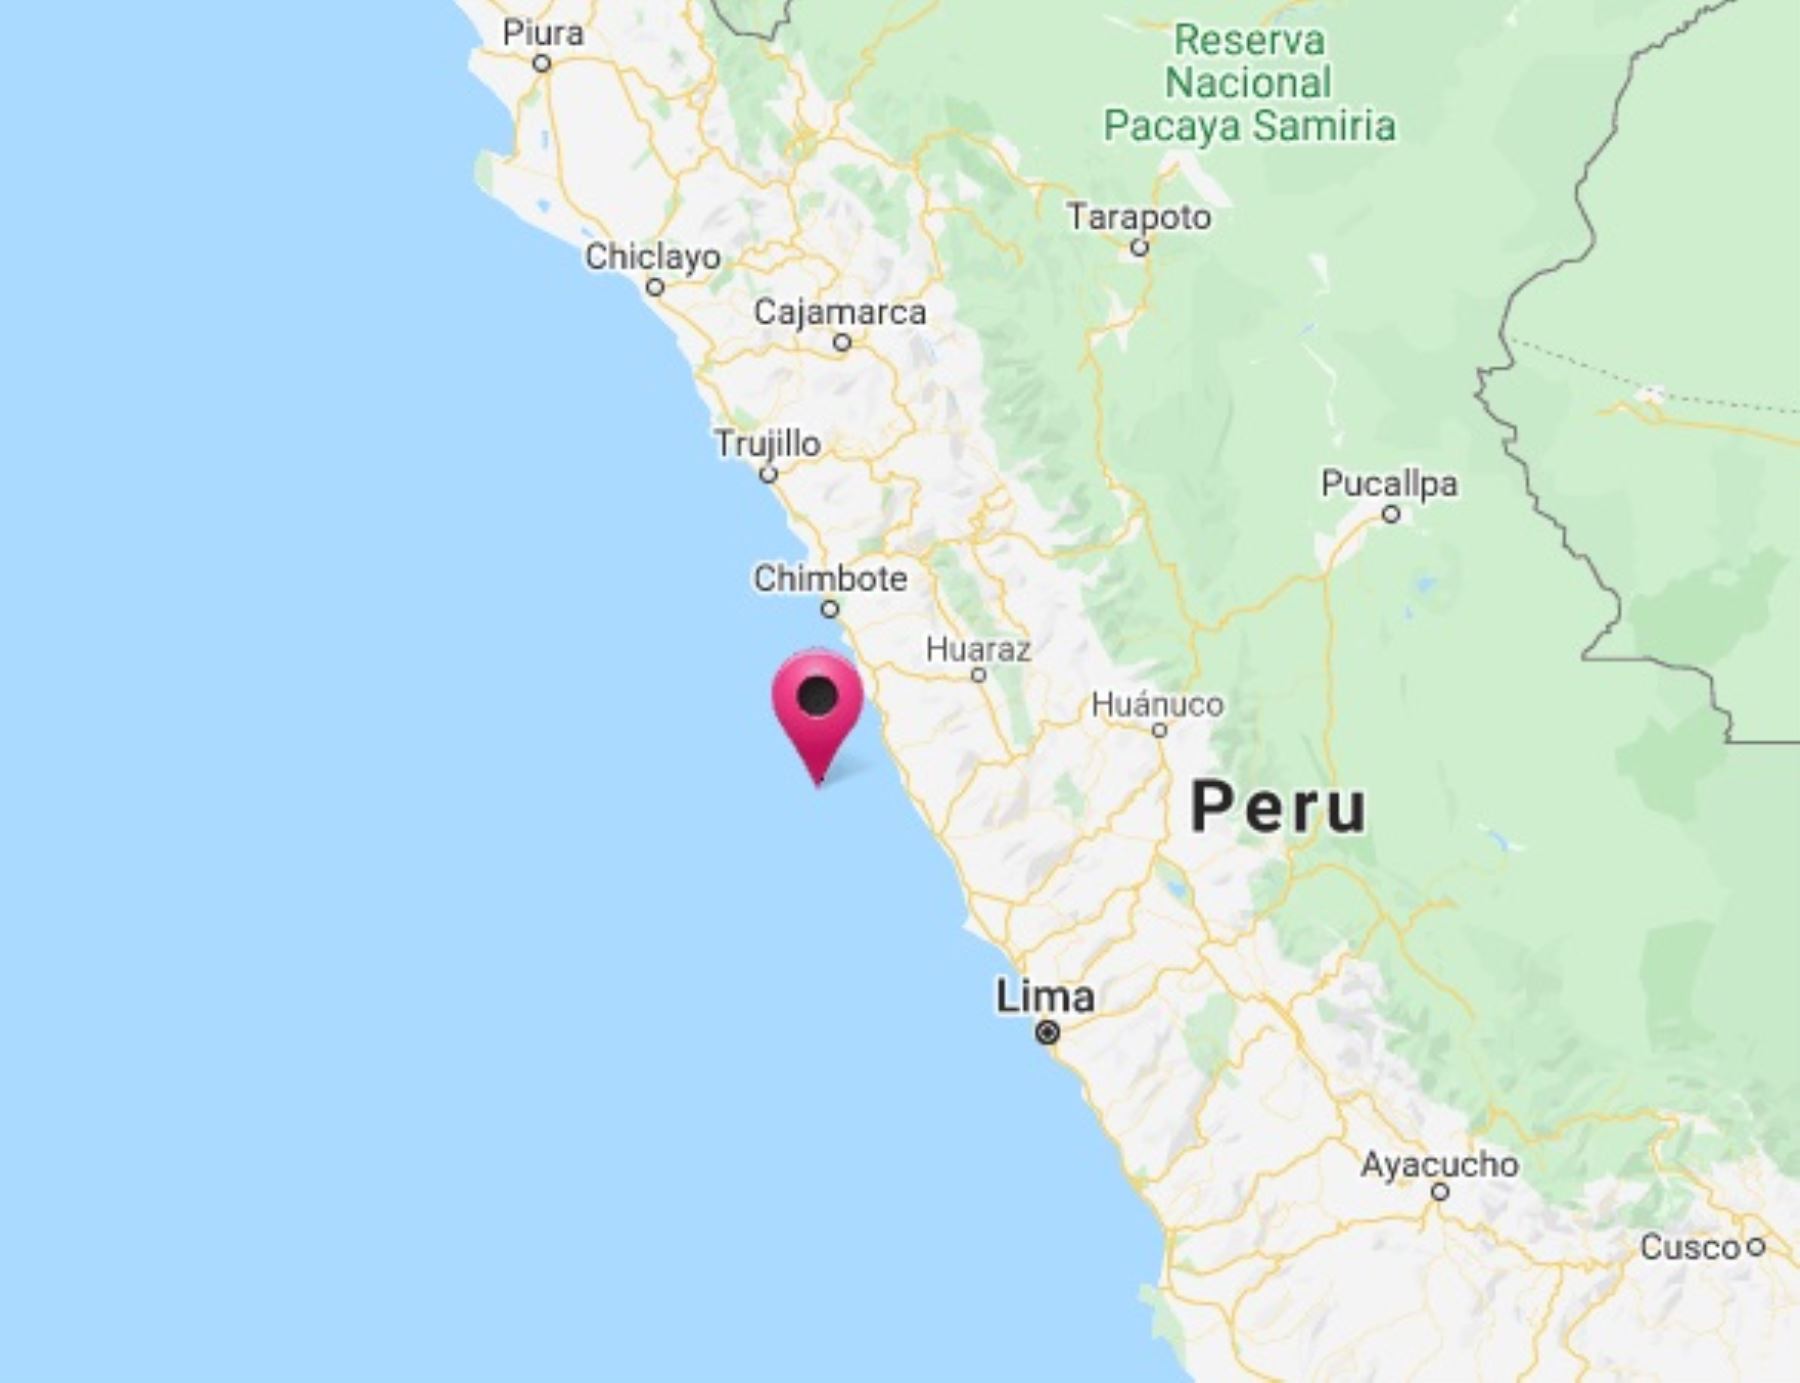 El epicentro del sismo de magnitud 4.1 se ubicó en el océano Pacífico, a 69 kilómetros de la ciudad de Huarmey, en Áncash.